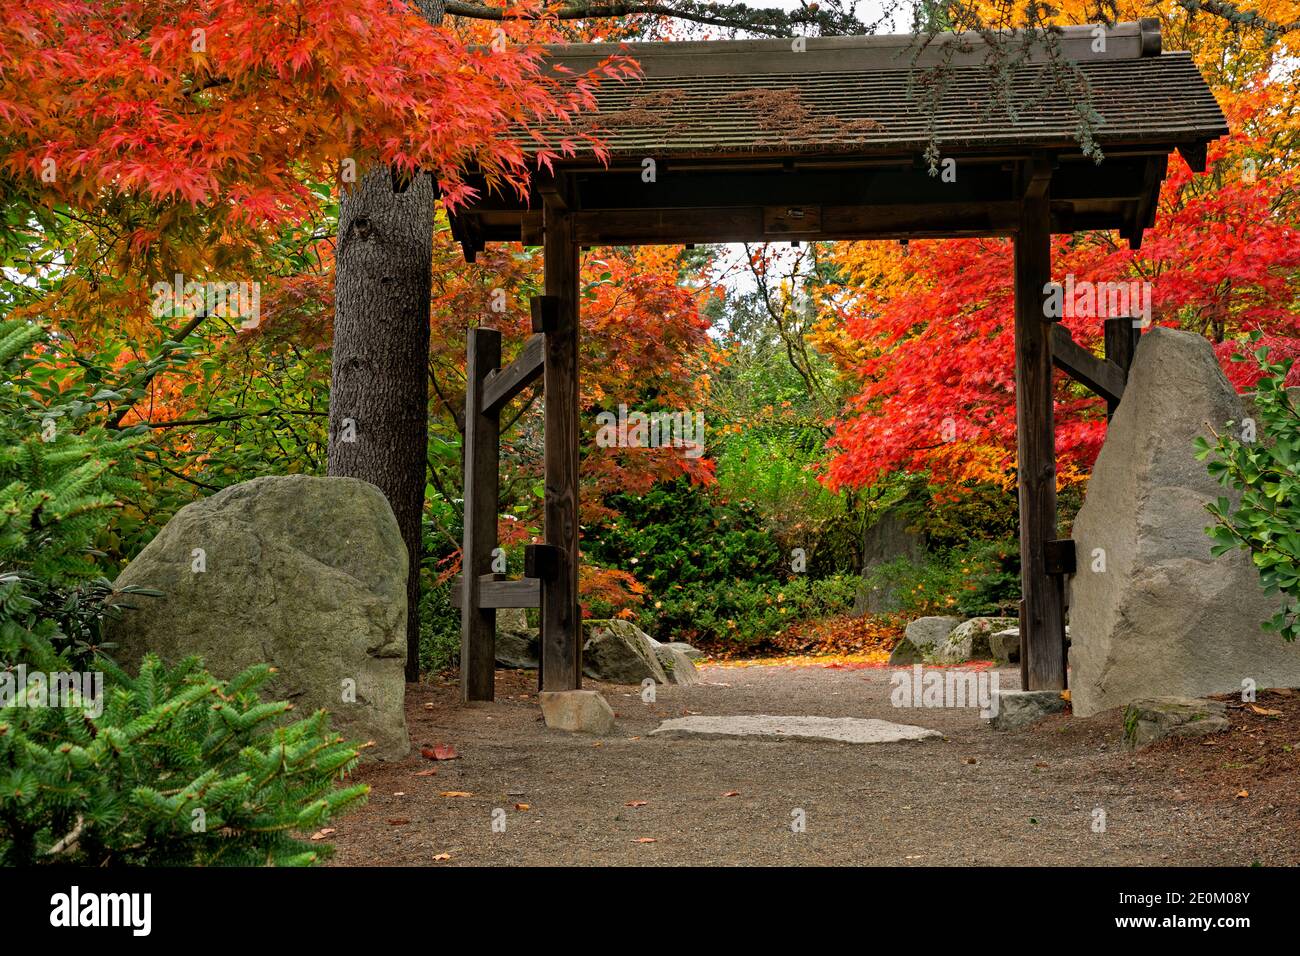 WA18965-00...WASHINGTON - Entrance to the Stone Garden area of Kubota Gardens park in Seattle. Stock Photo